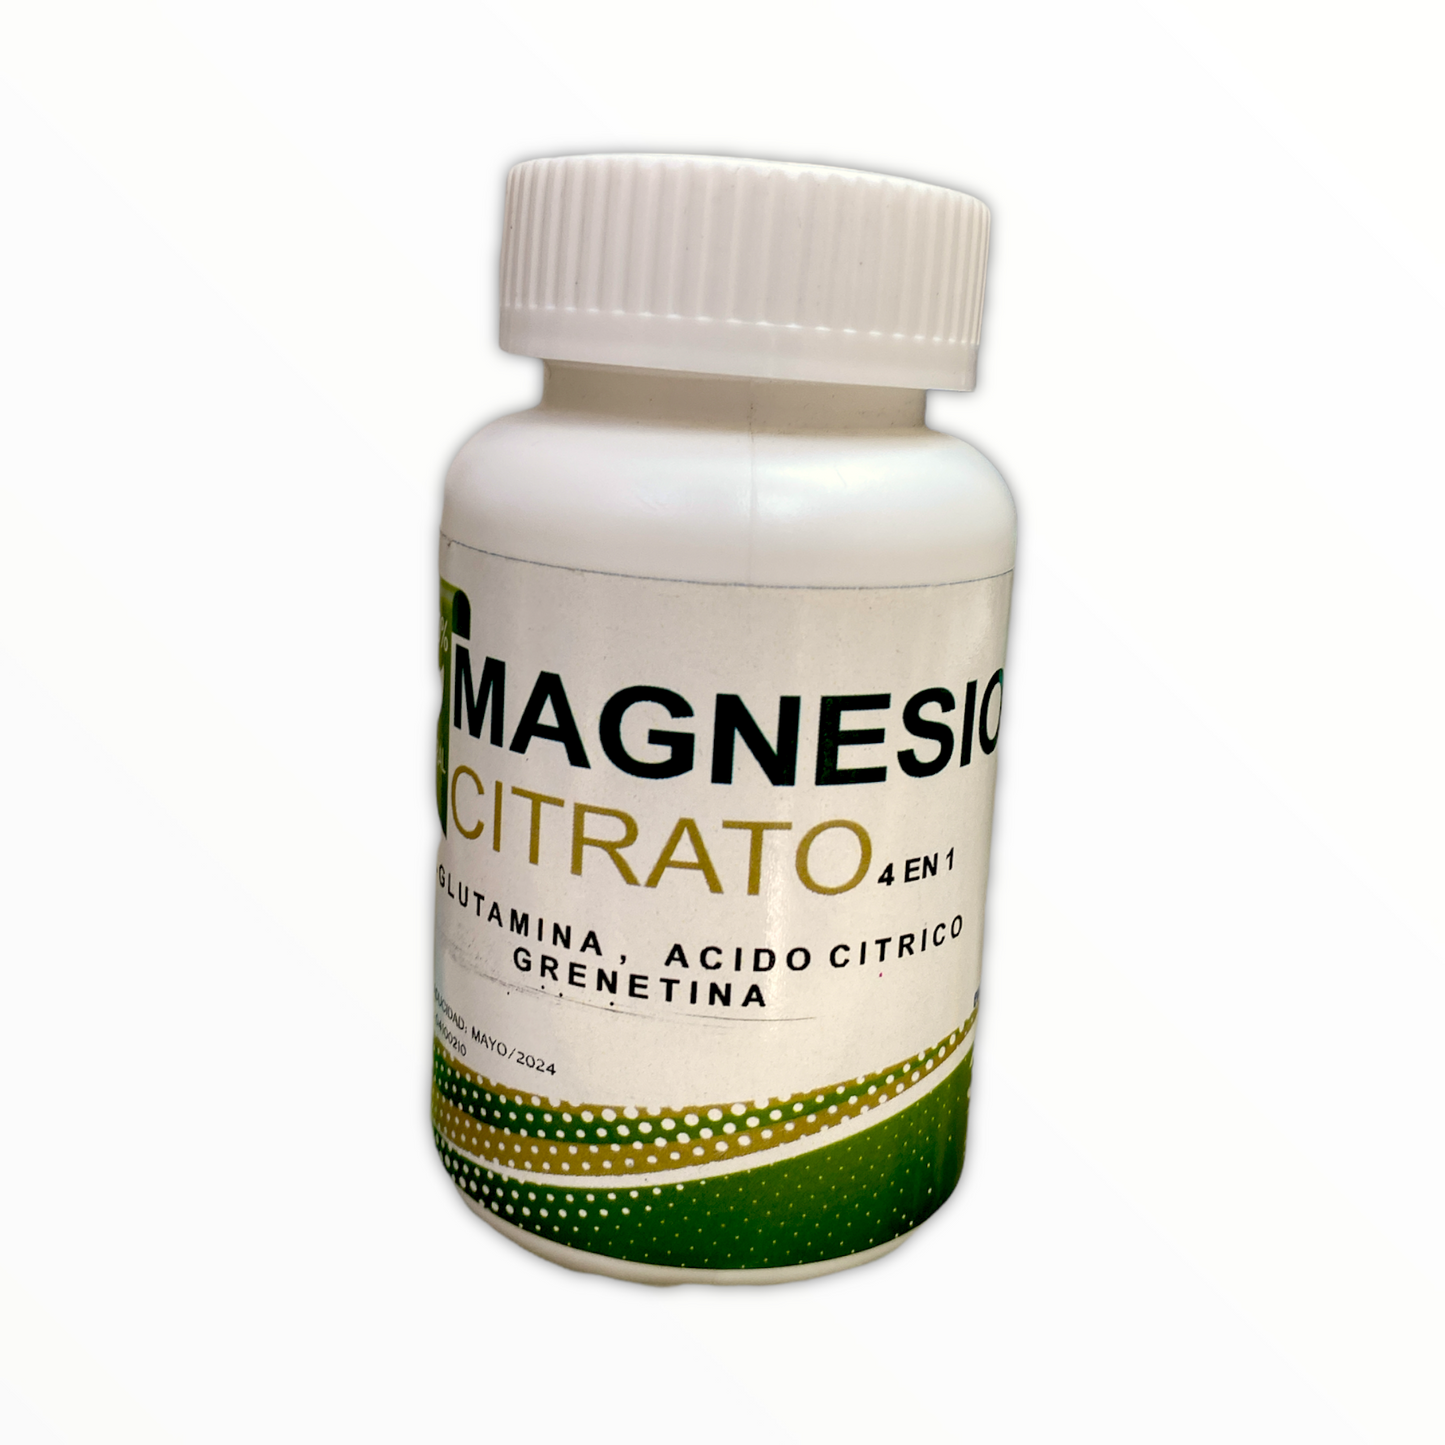 Citrato de Magnesio 4 en 1 30 tabletas